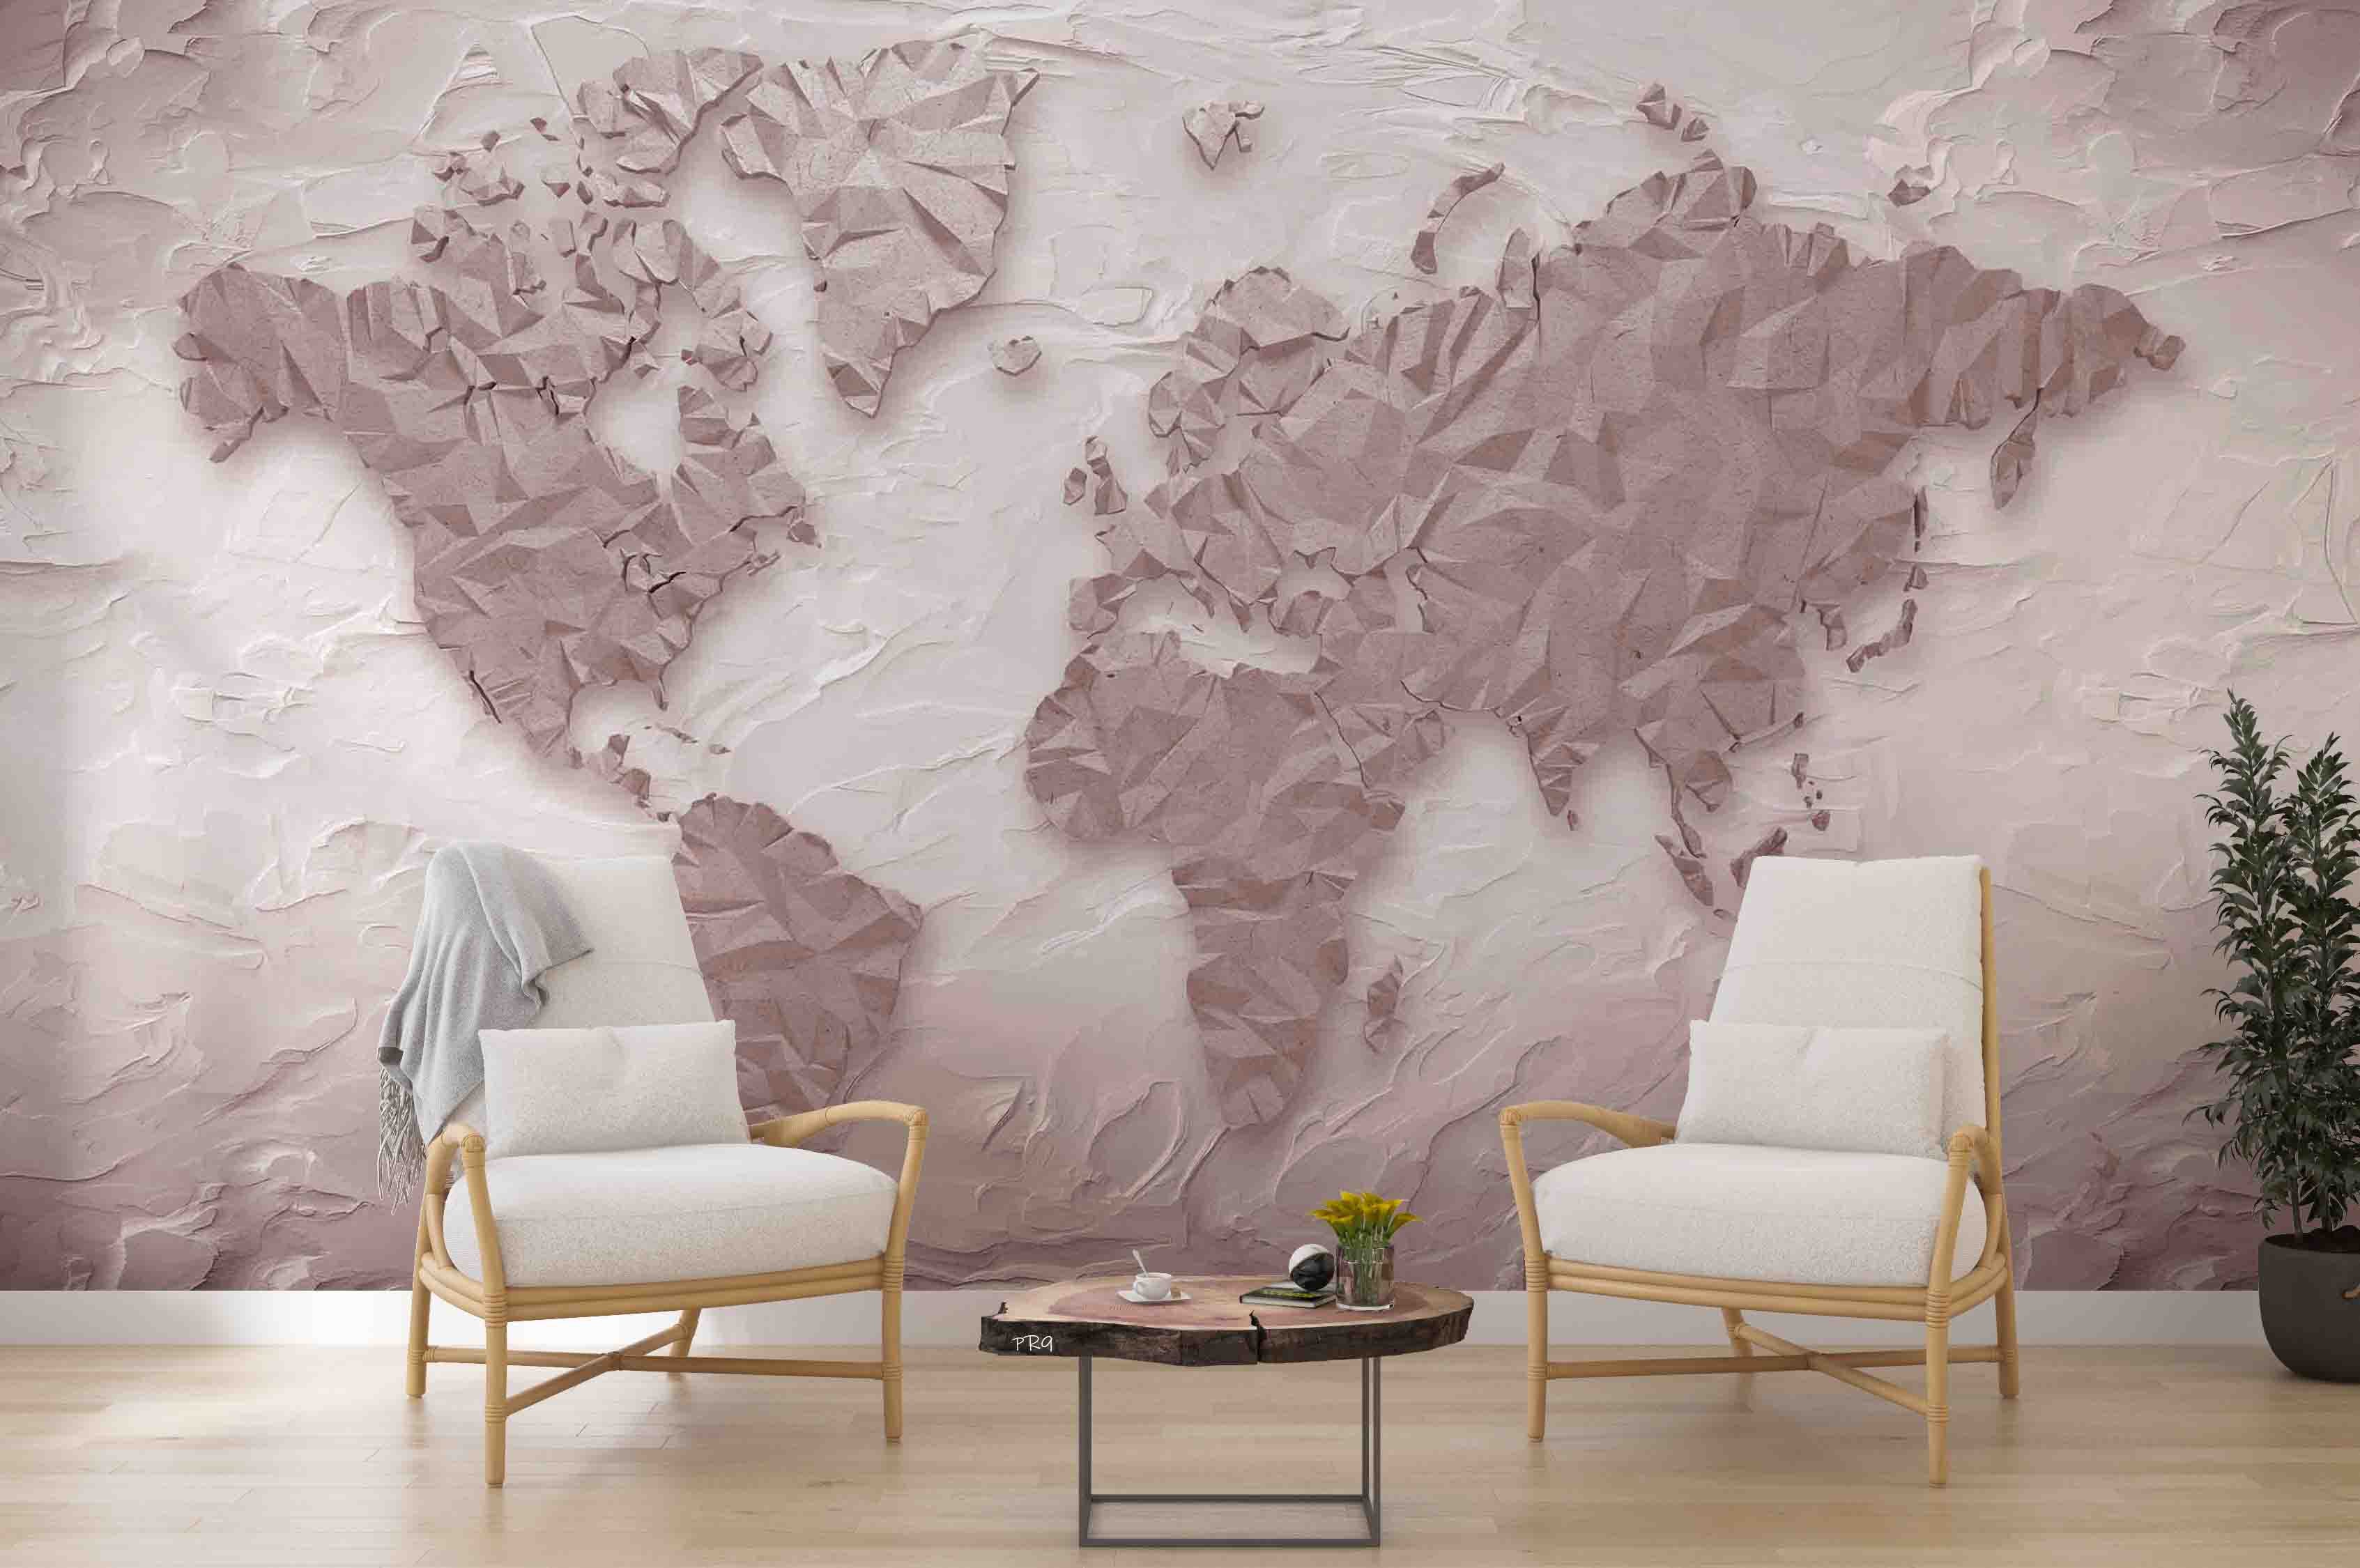 3D Abstract Retro World Map Wall Mural Wallpaper GD 4676- Jess Art Decoration